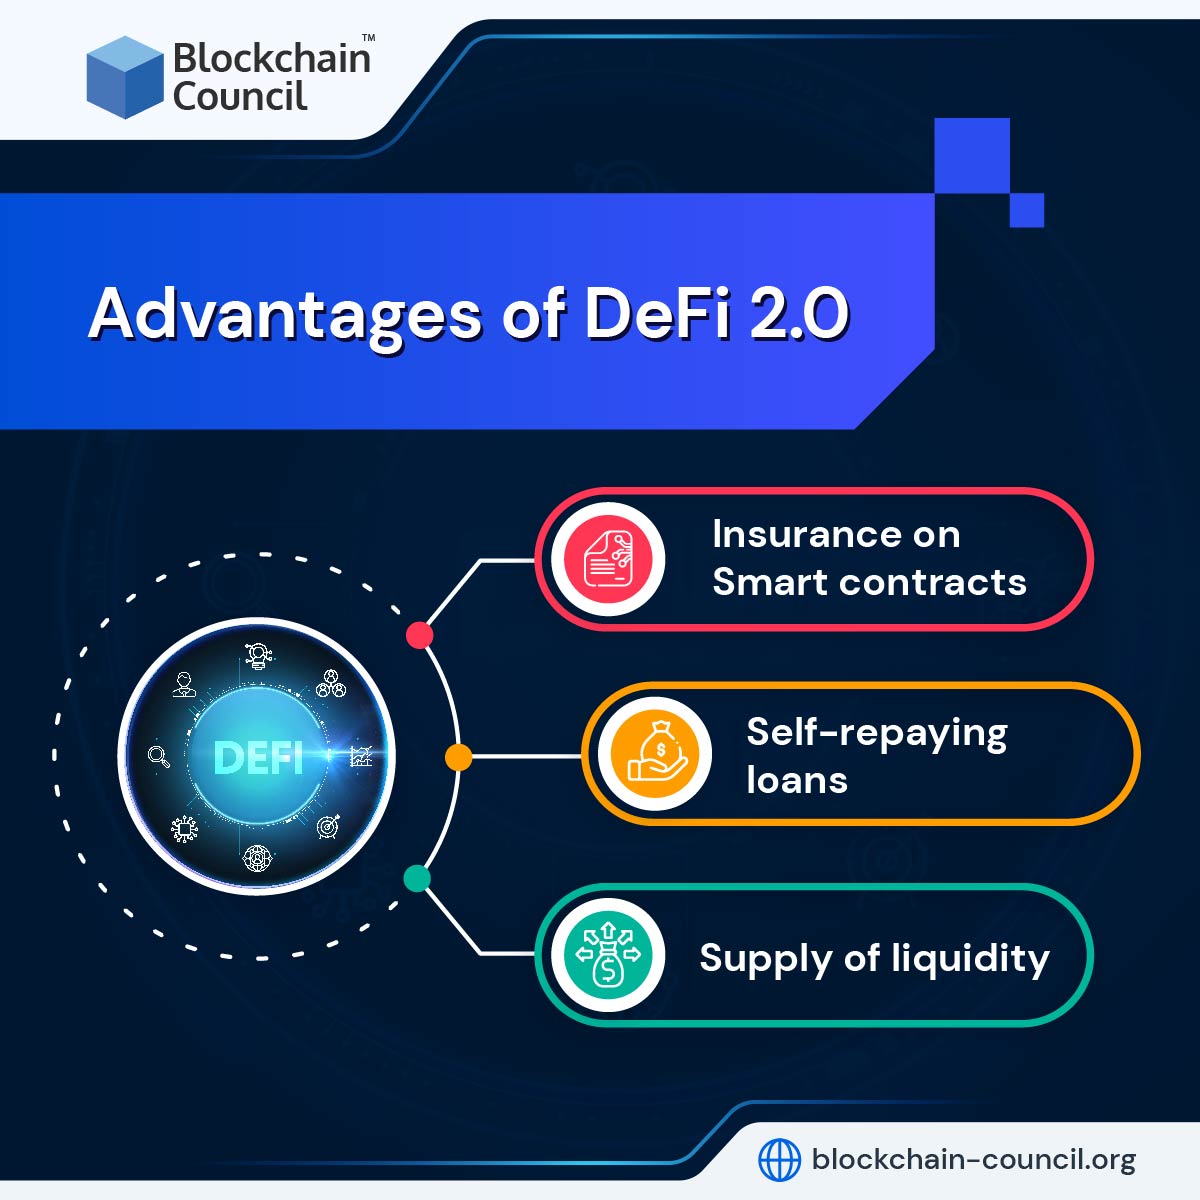 Advantages of DeFi 2.0